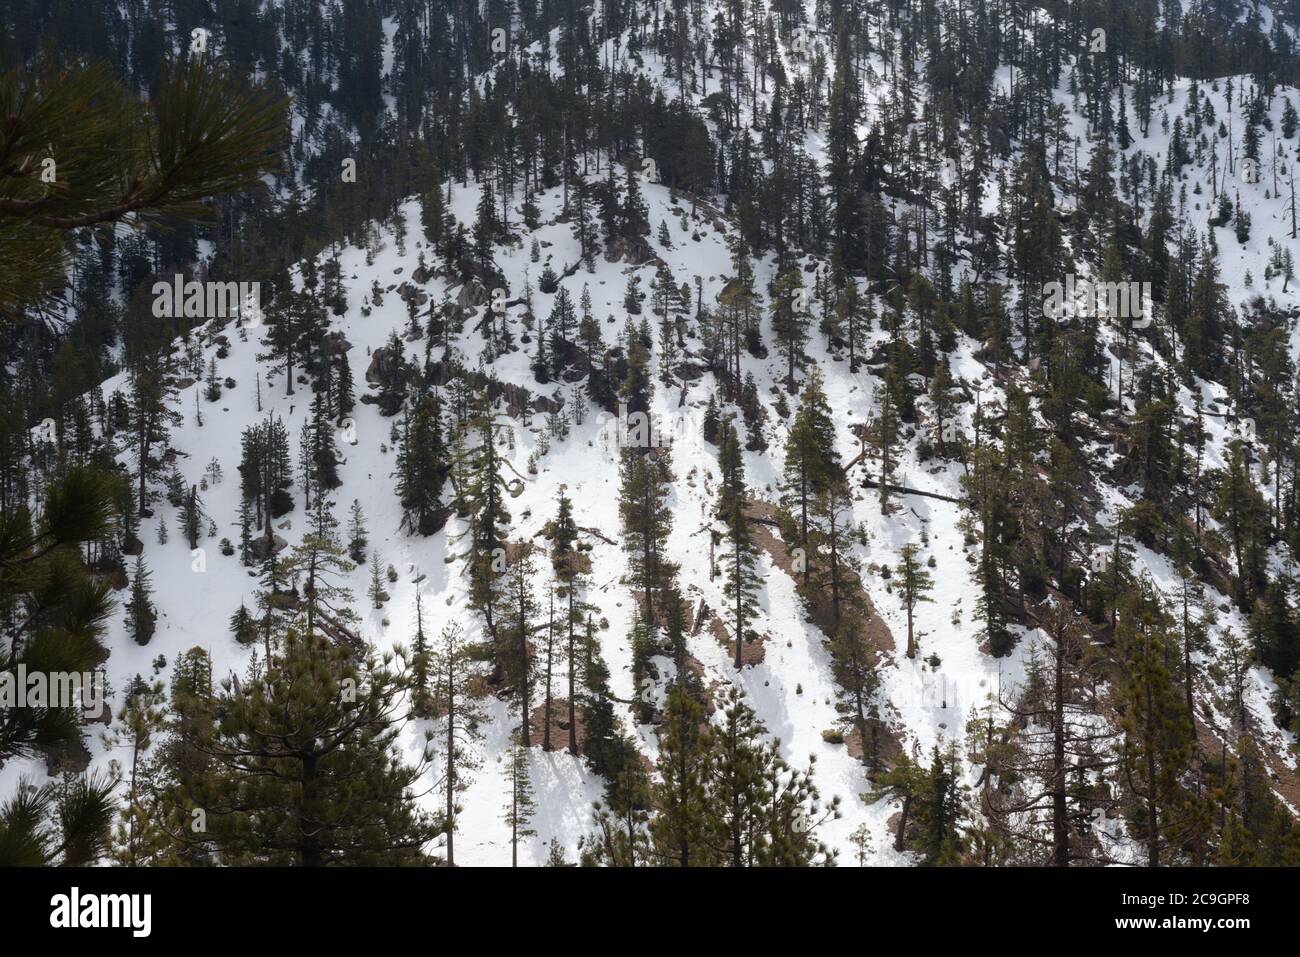 Alpine Landschaft von schneebedeckten Hang von Pinien, Blick quer und unten auf den Wald, wiederholende Muster, Linien, wachsen, mit Idee der Schönheit. Stockfoto